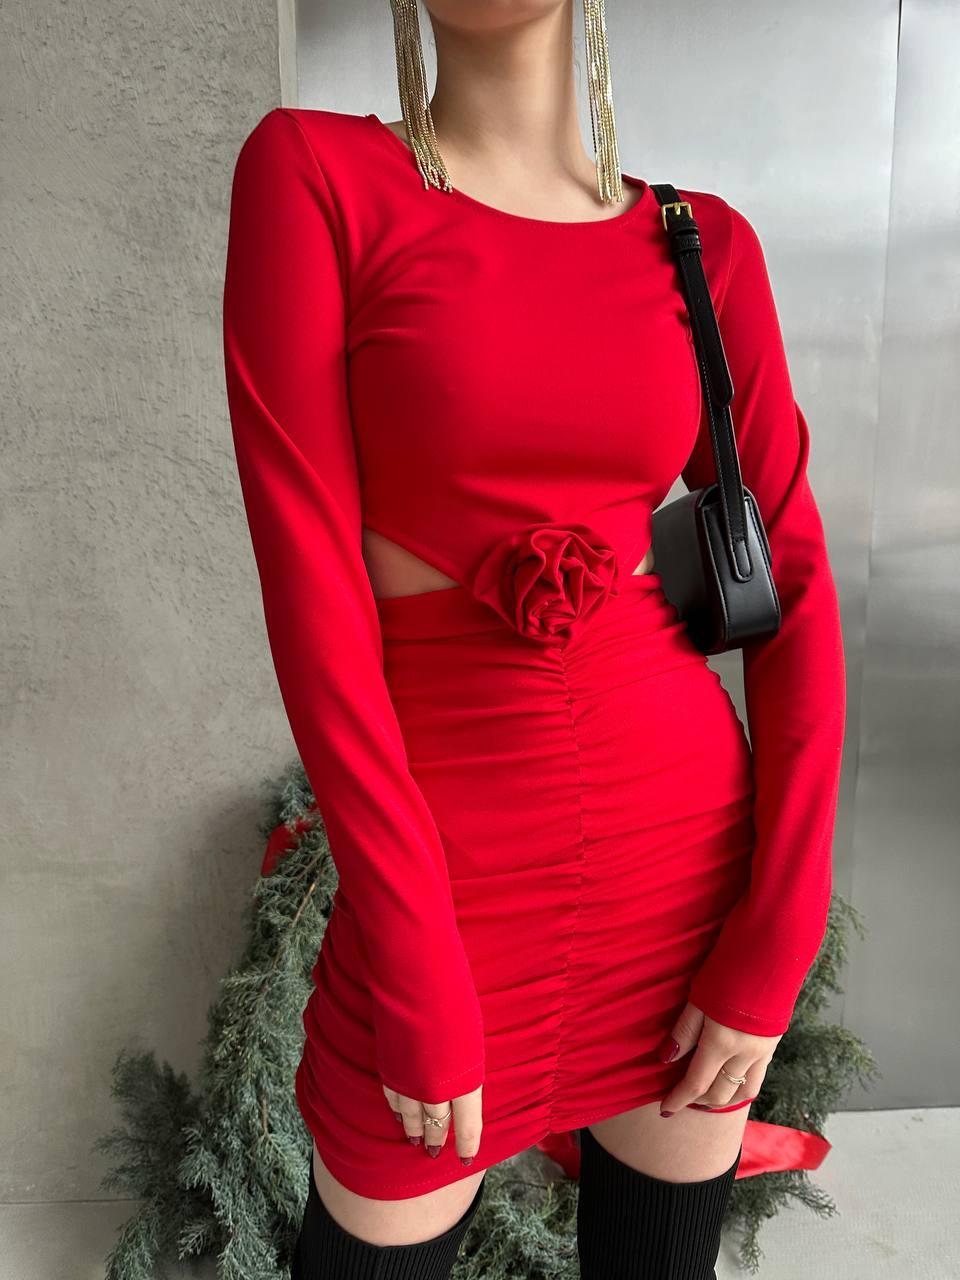 Червона жіноча сукня з креп-дайвінгу по фігурі з розрізами, драпіруванням і трояндою ручної роботи